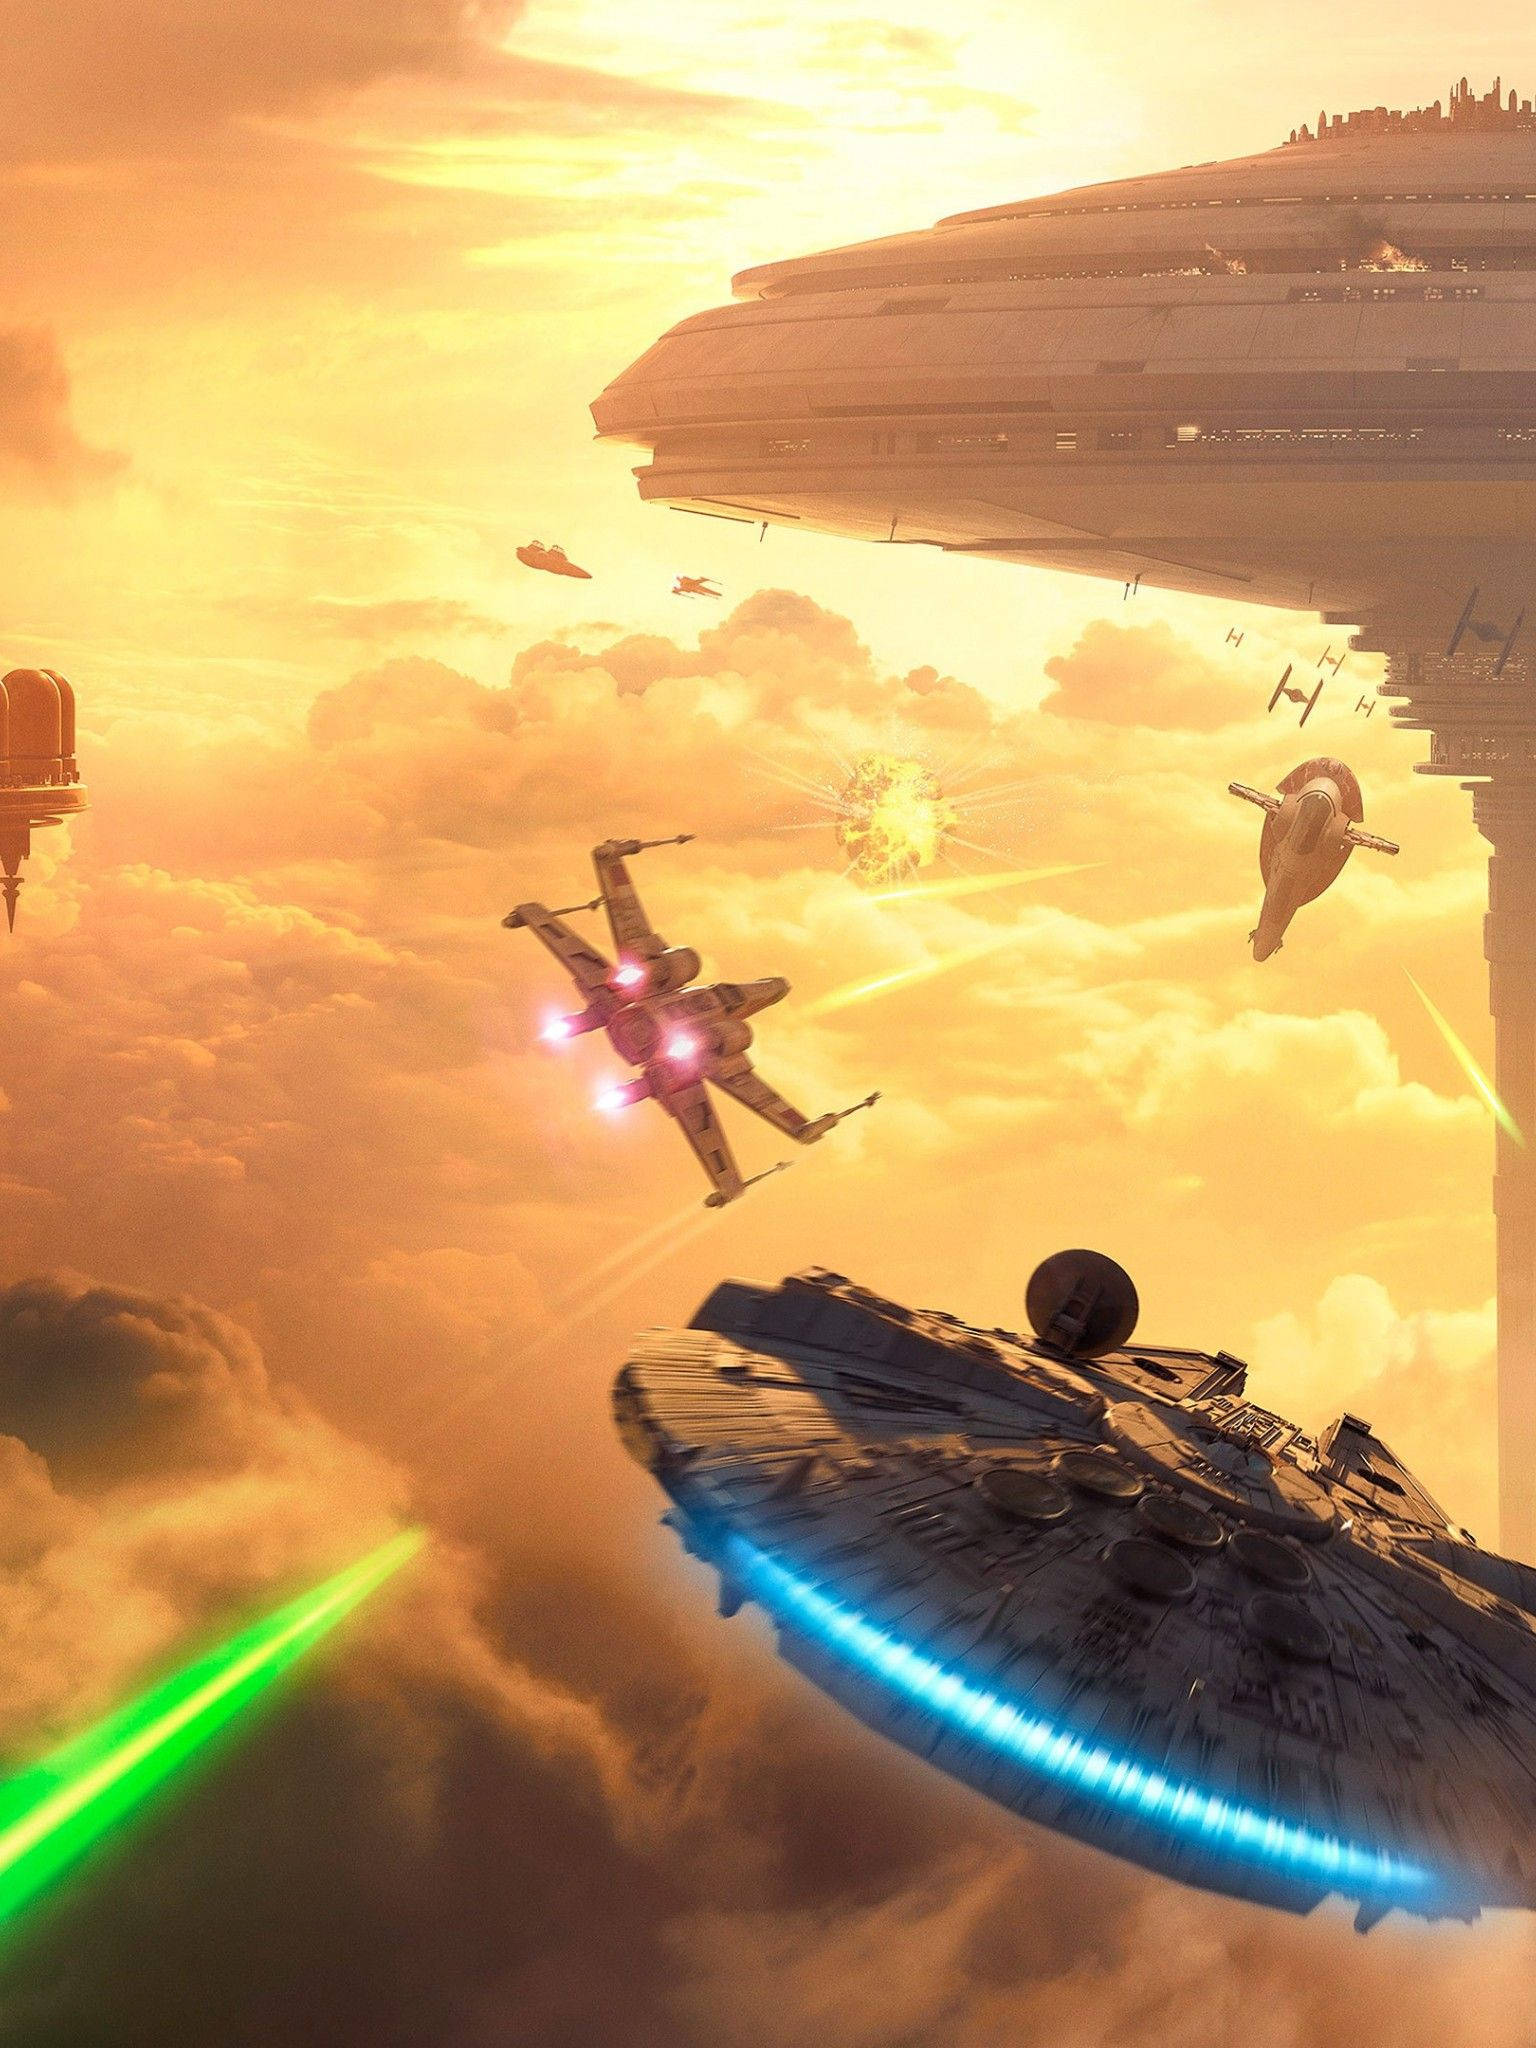 Battlefront Bespin Star Wars Tablet Background